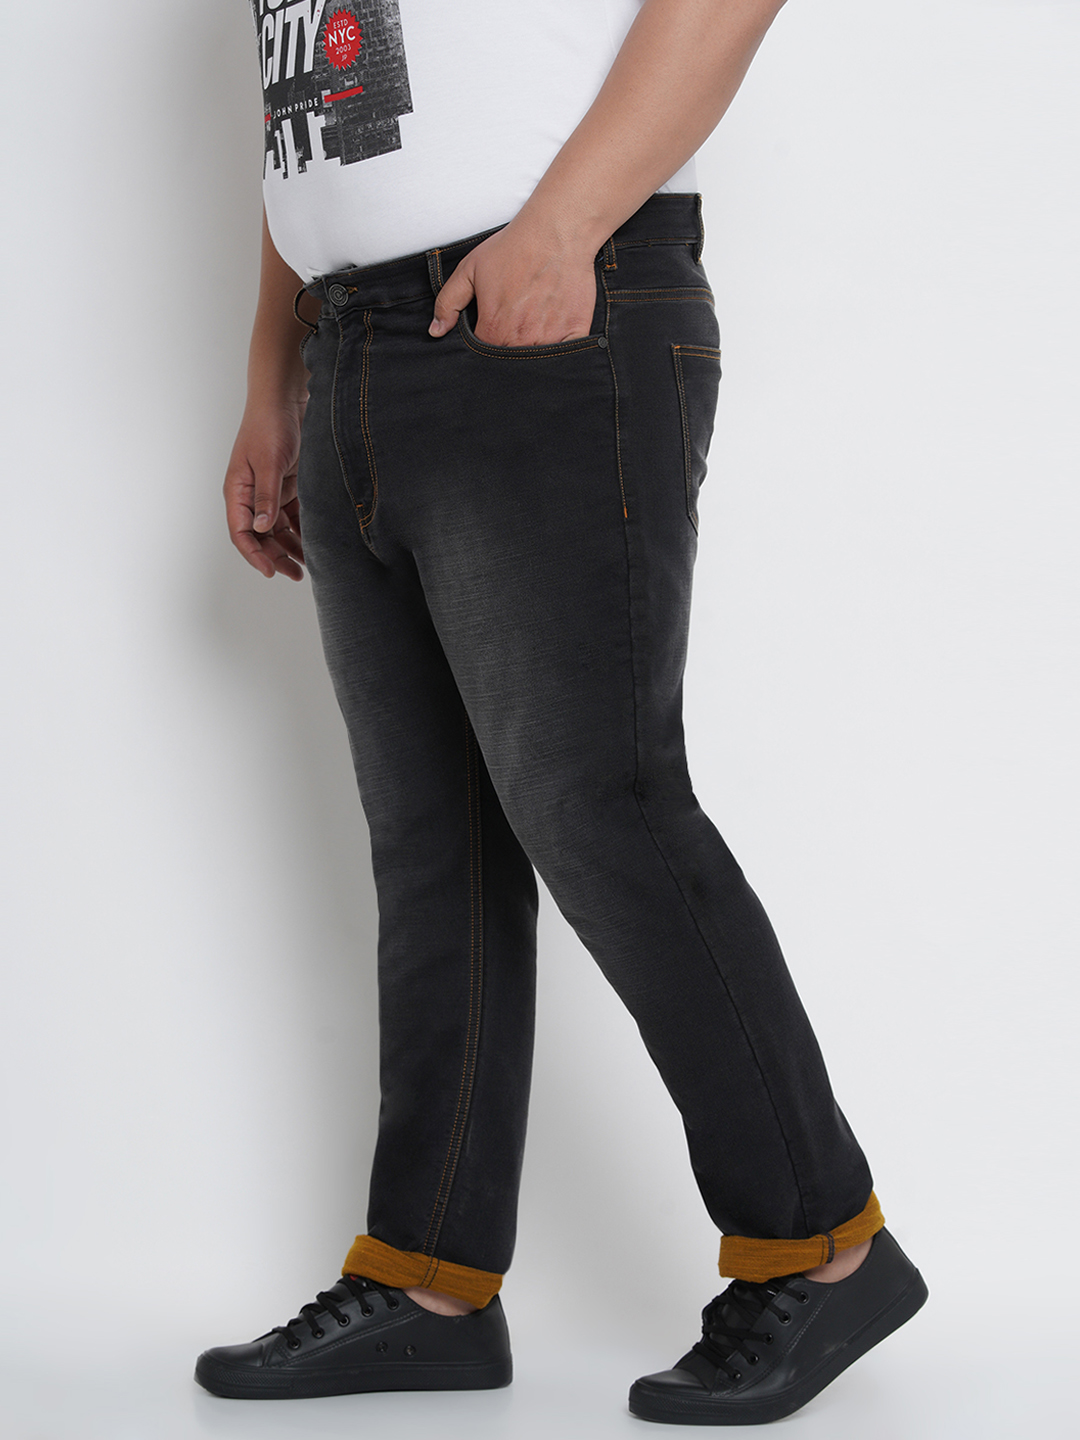 bottomwear/jeans/JPJ12124/jpj12124-3.jpg